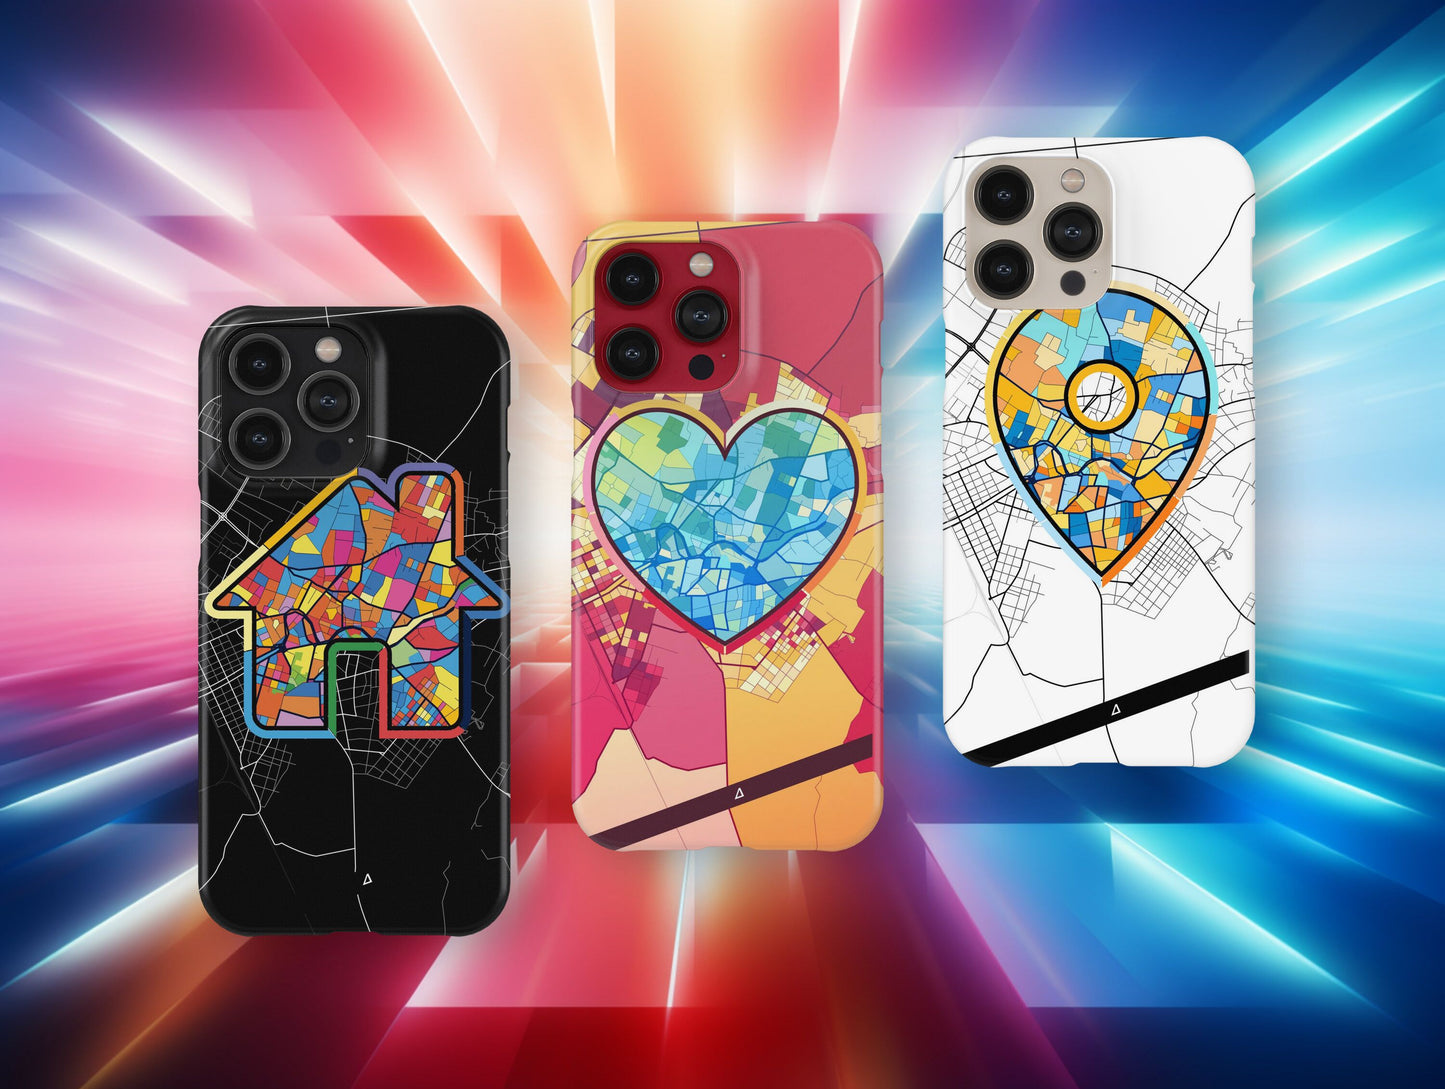 Κομοτηνη Ελλαδα slim phone case with colorful icon. Birthday, wedding or housewarming gift. Couple match cases.